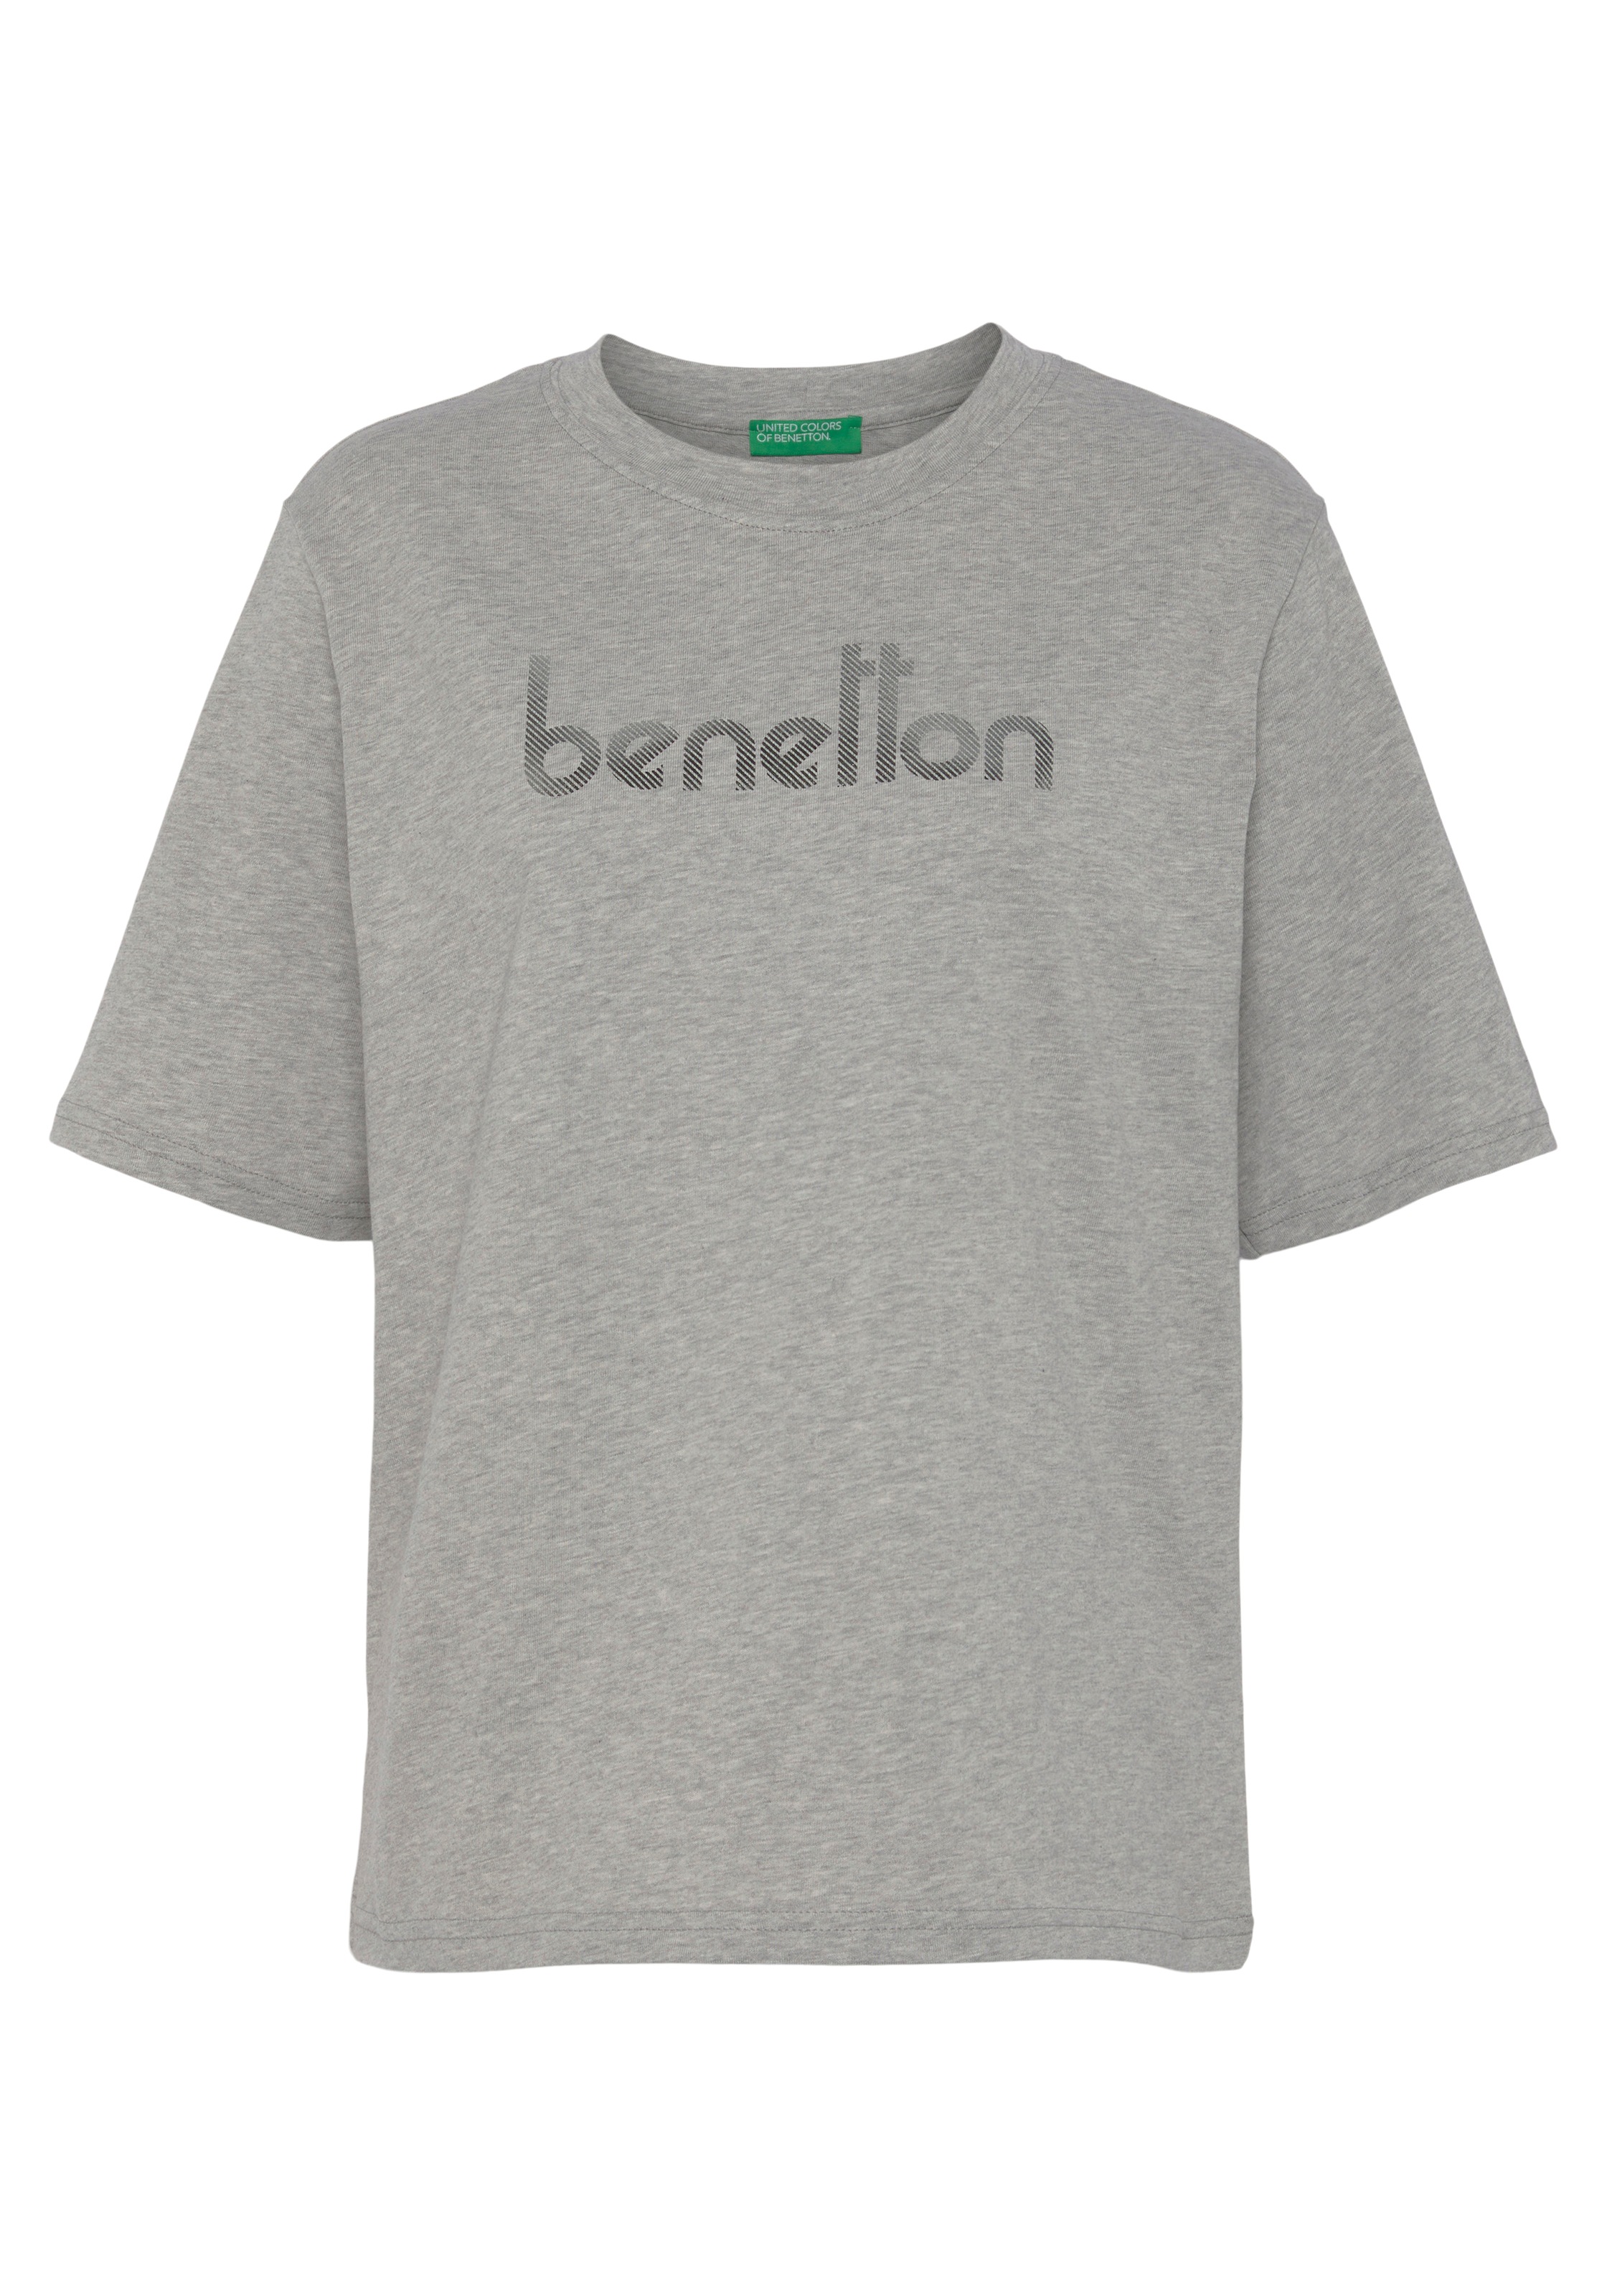 T-Shirt, Logodruck mit shoppen United of auf Brust Colors der Benetton